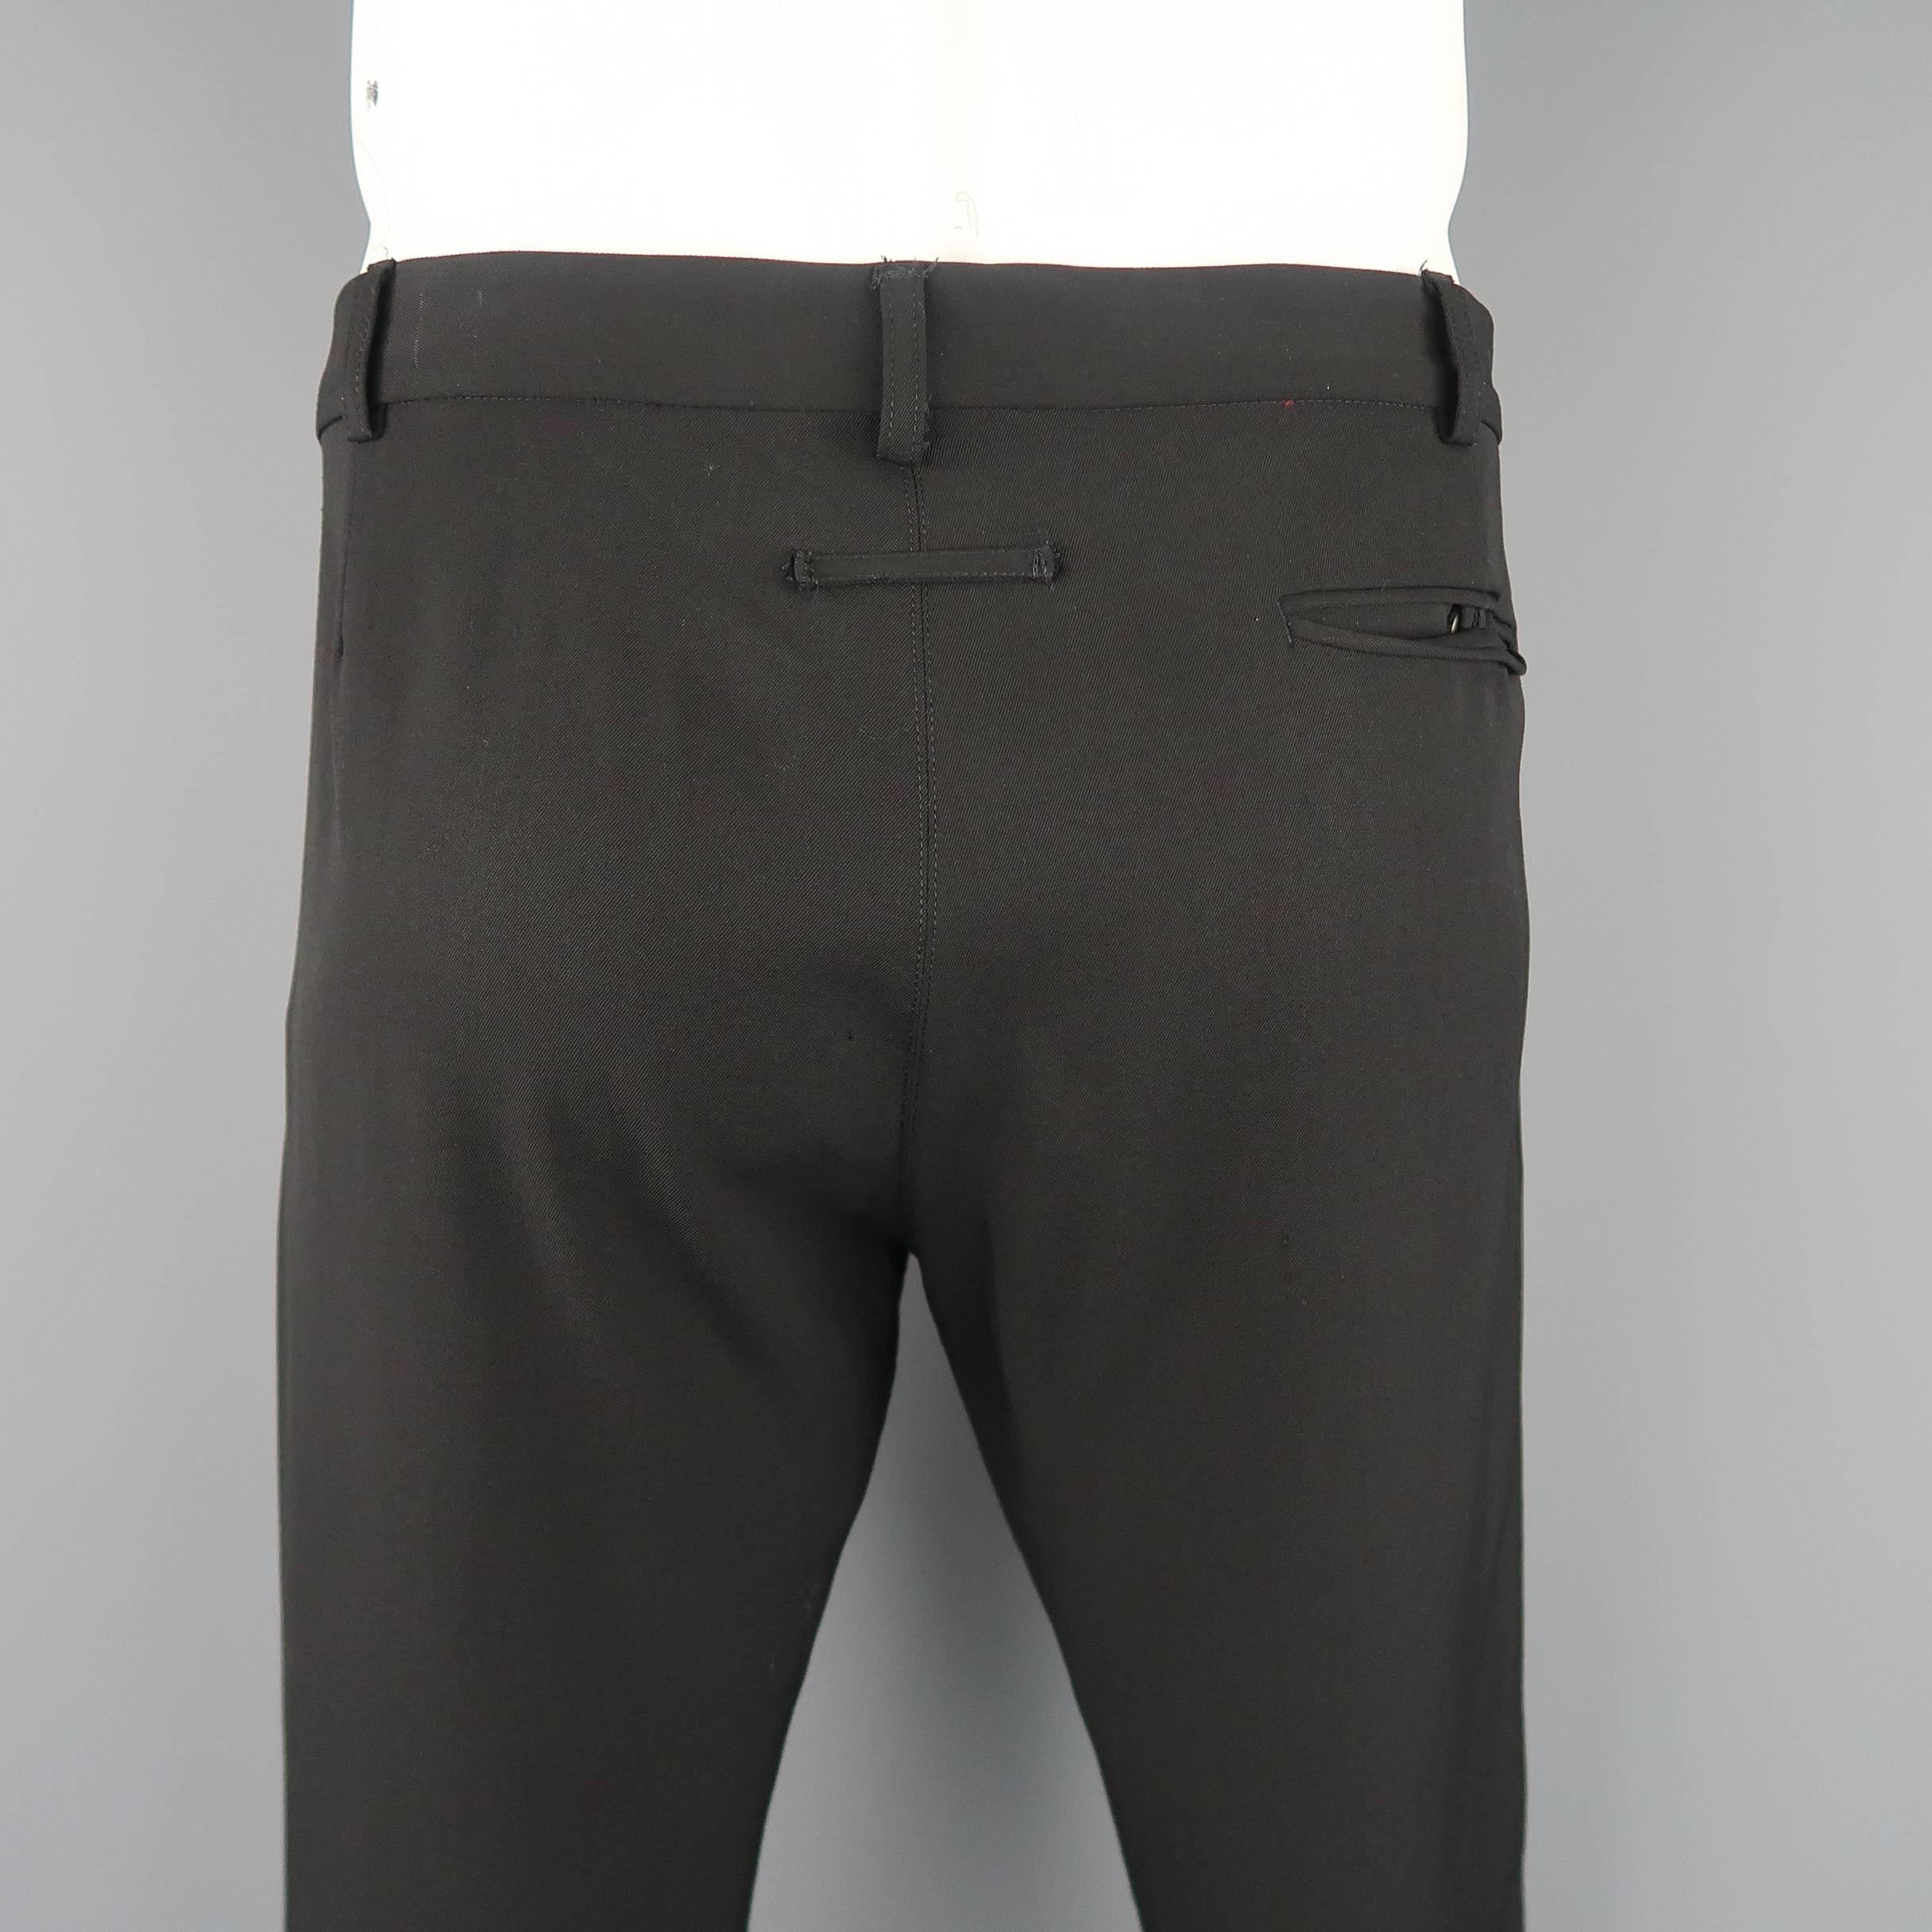 Jean Paul Gaultier Men's Black Wool Leather Piping Dress Pants 3